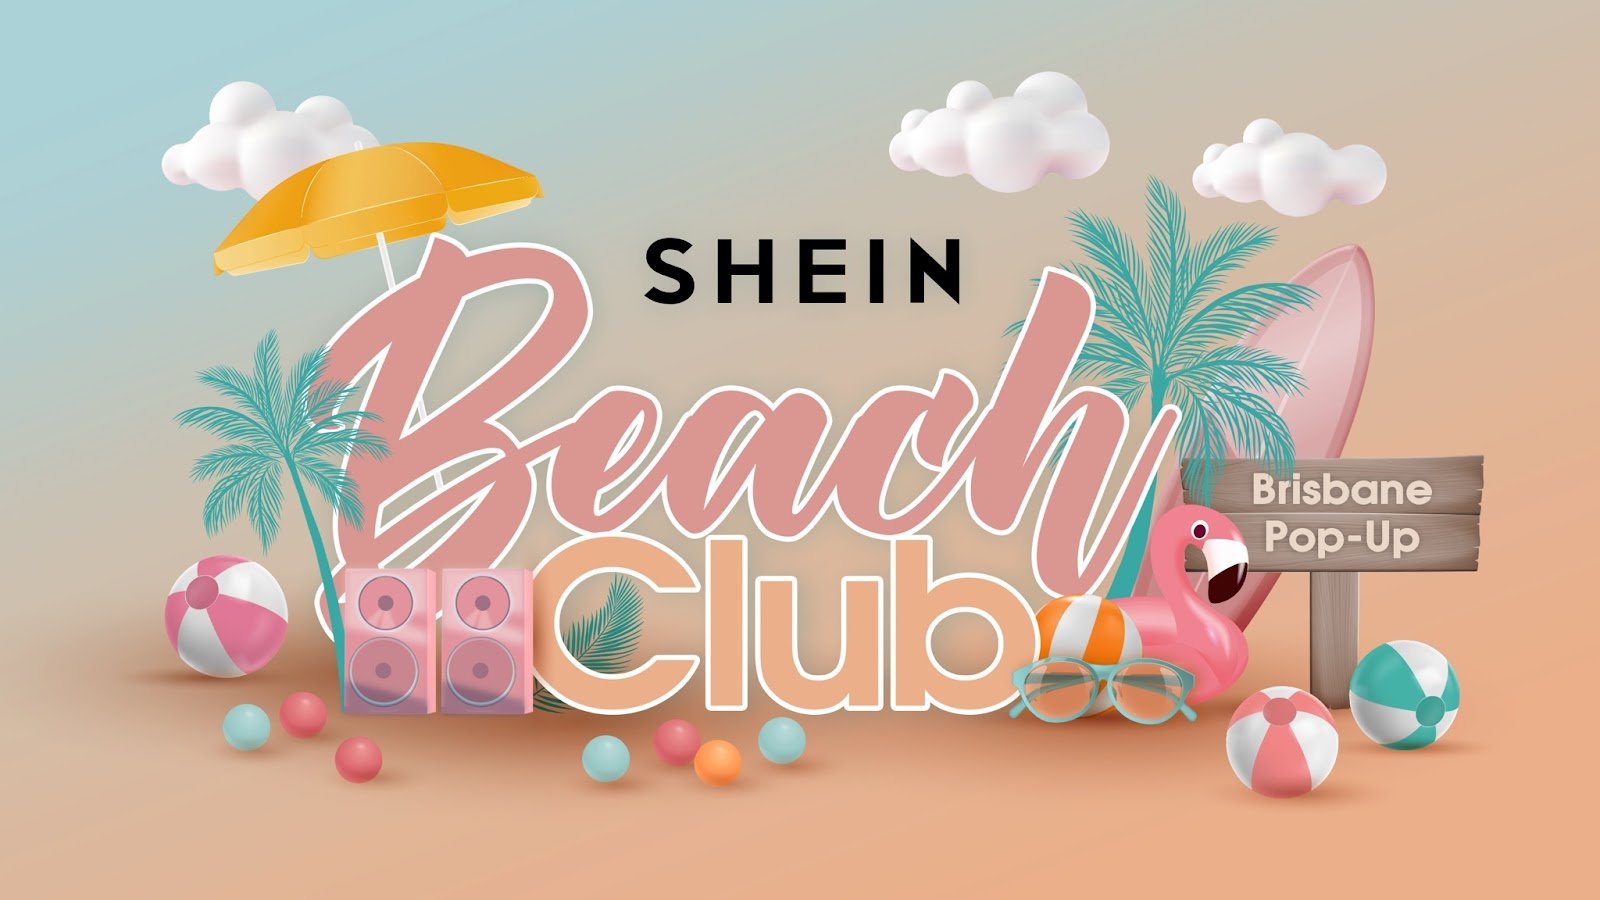 SHEIN set to make waves in Brisbane with Beach Club Pop-Up — GLOWBORED PR